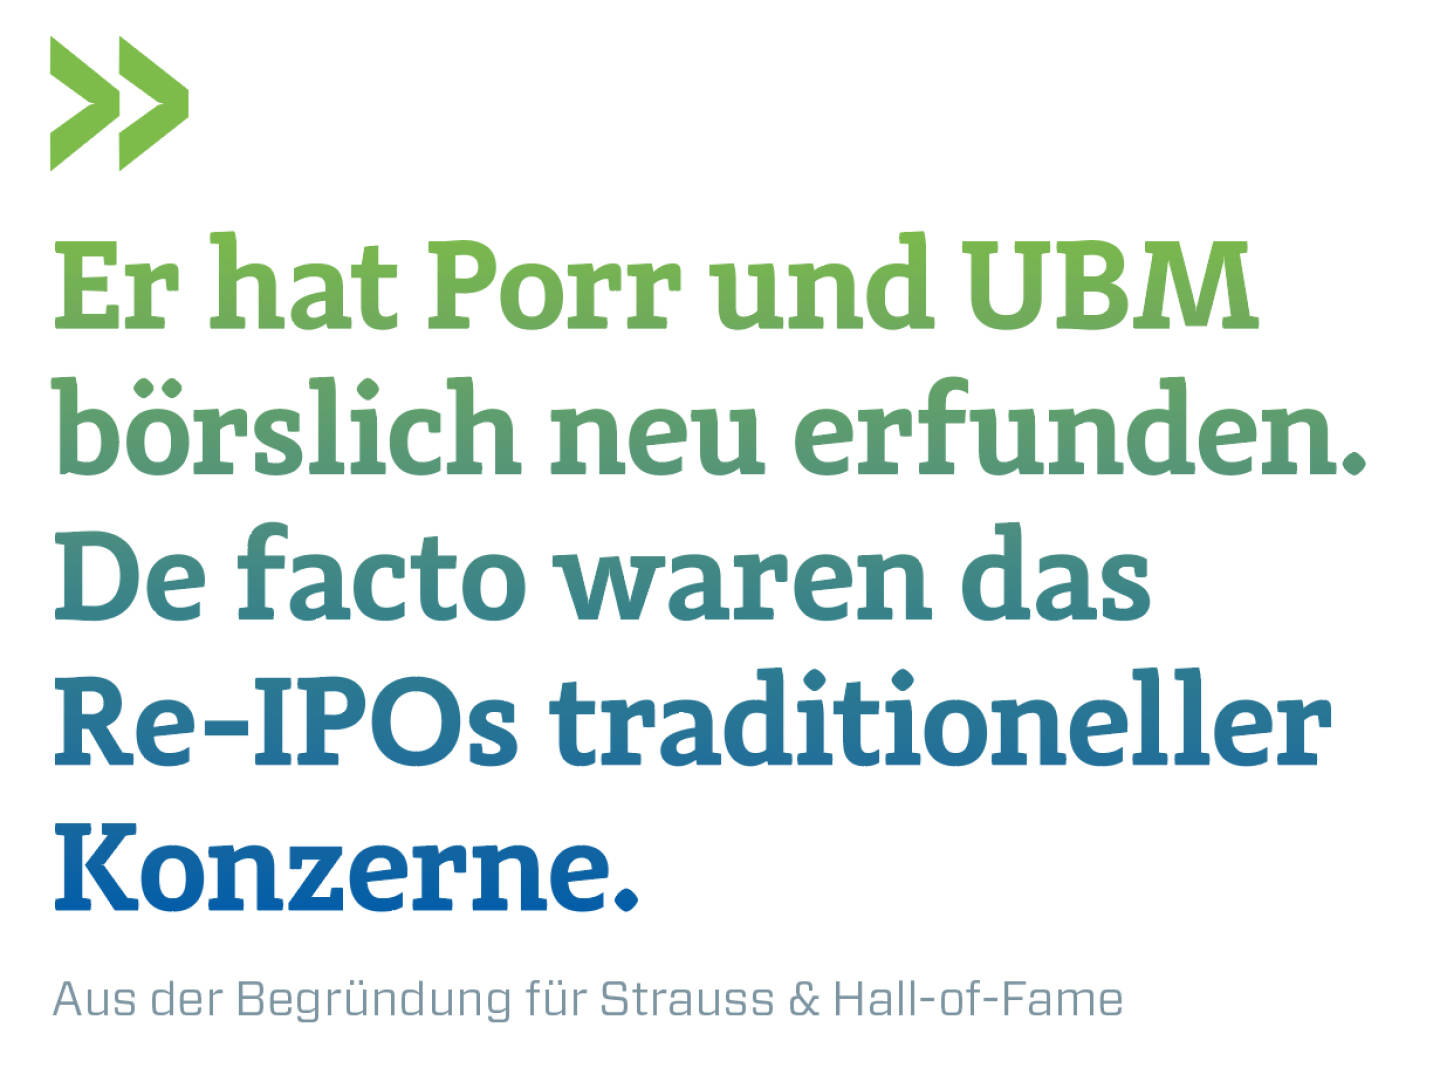 Er hat Porr und UBM börslich neu erfunden. De facto waren das Re-IPOs traditioneller Konzerne.
Aus der Begründung für Strauss & Hall-of-Fame